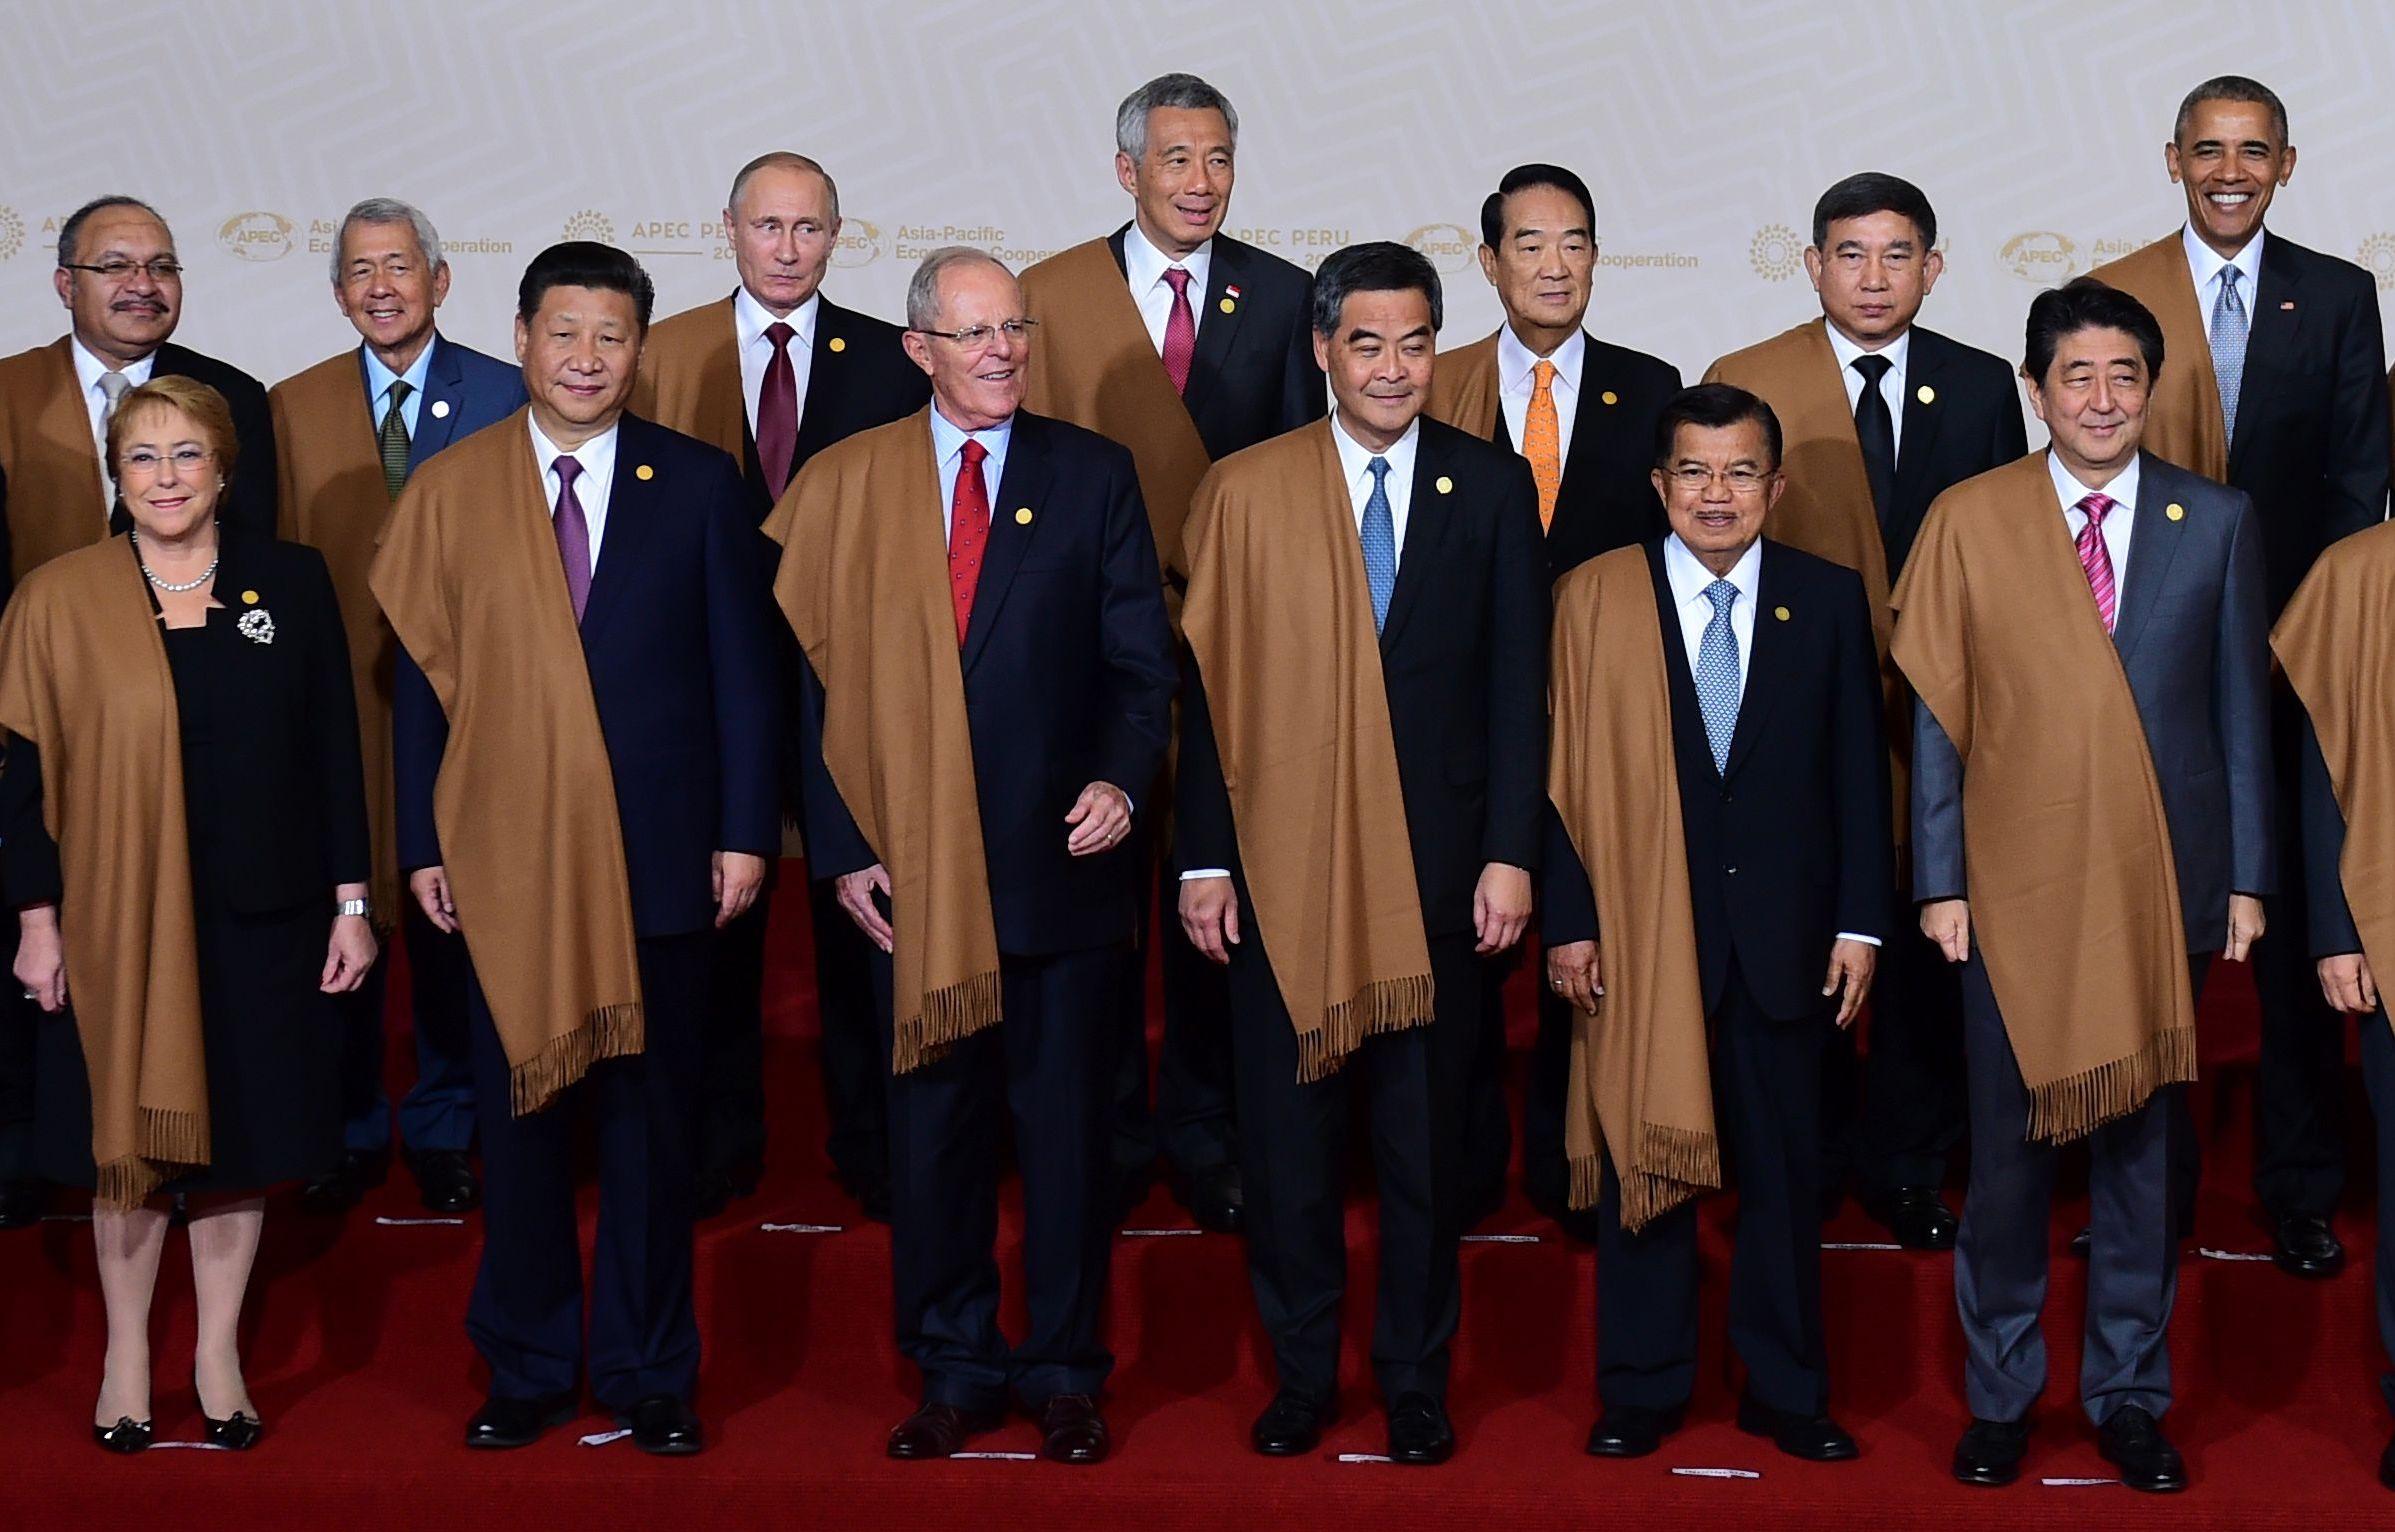 Kinas ledare Xi Jinping (andra från vänster, främre raden) och Hongkongs Chief Executive Leung Chun-ying (fjärde från vänster, främre raden) står med övriga APEC-ledare under toppmötets sista dag i Lima, Peru, 20 november. (Foto: Martin Bernetti/AFP/Getty Images)